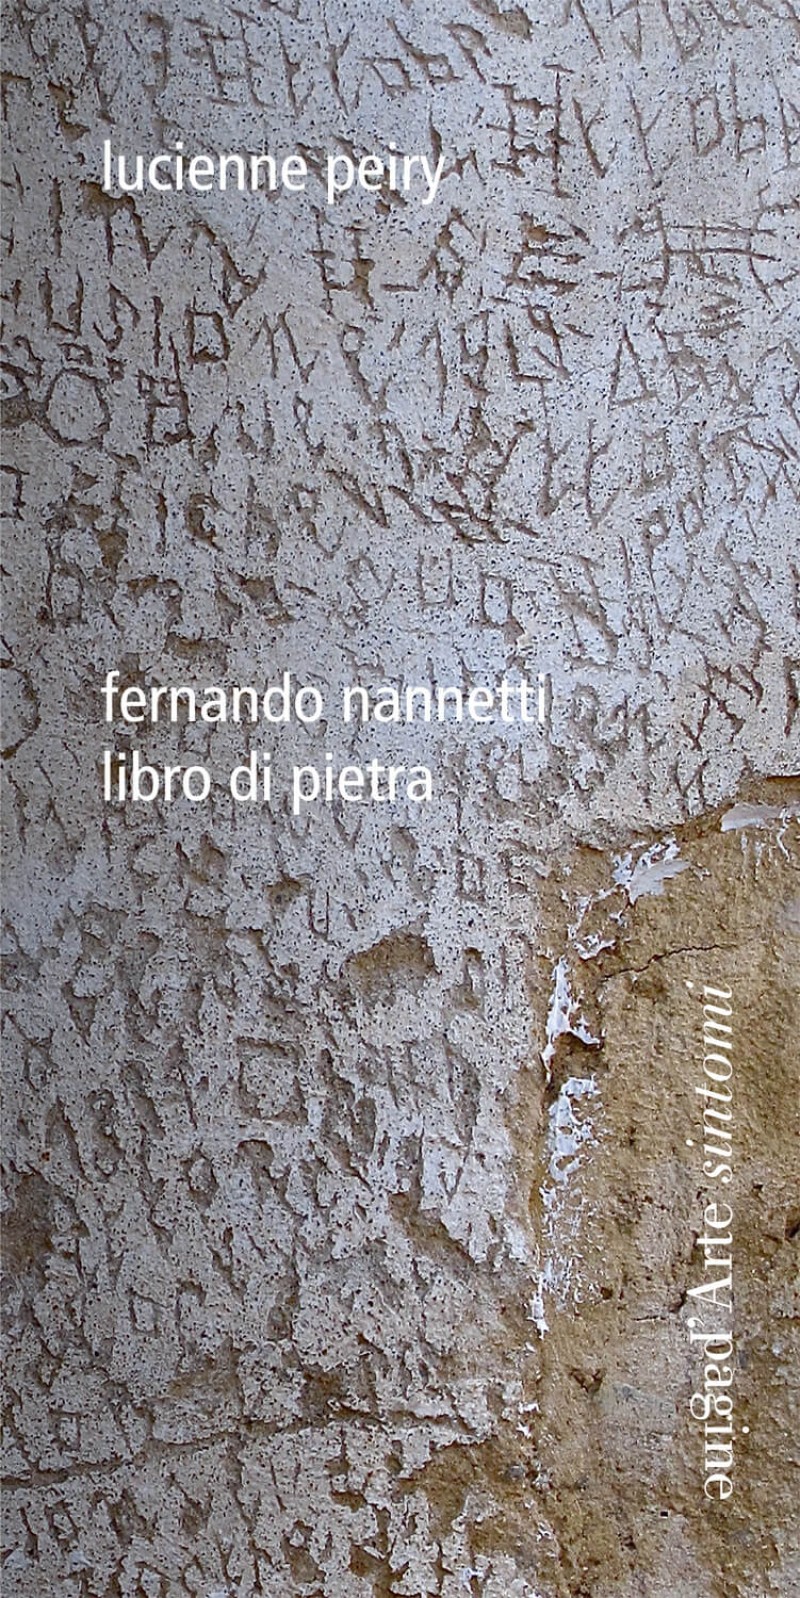 Libro di Pietra. Fernando Nannetti, Tesserete, Pagine d’Arte, 2021.